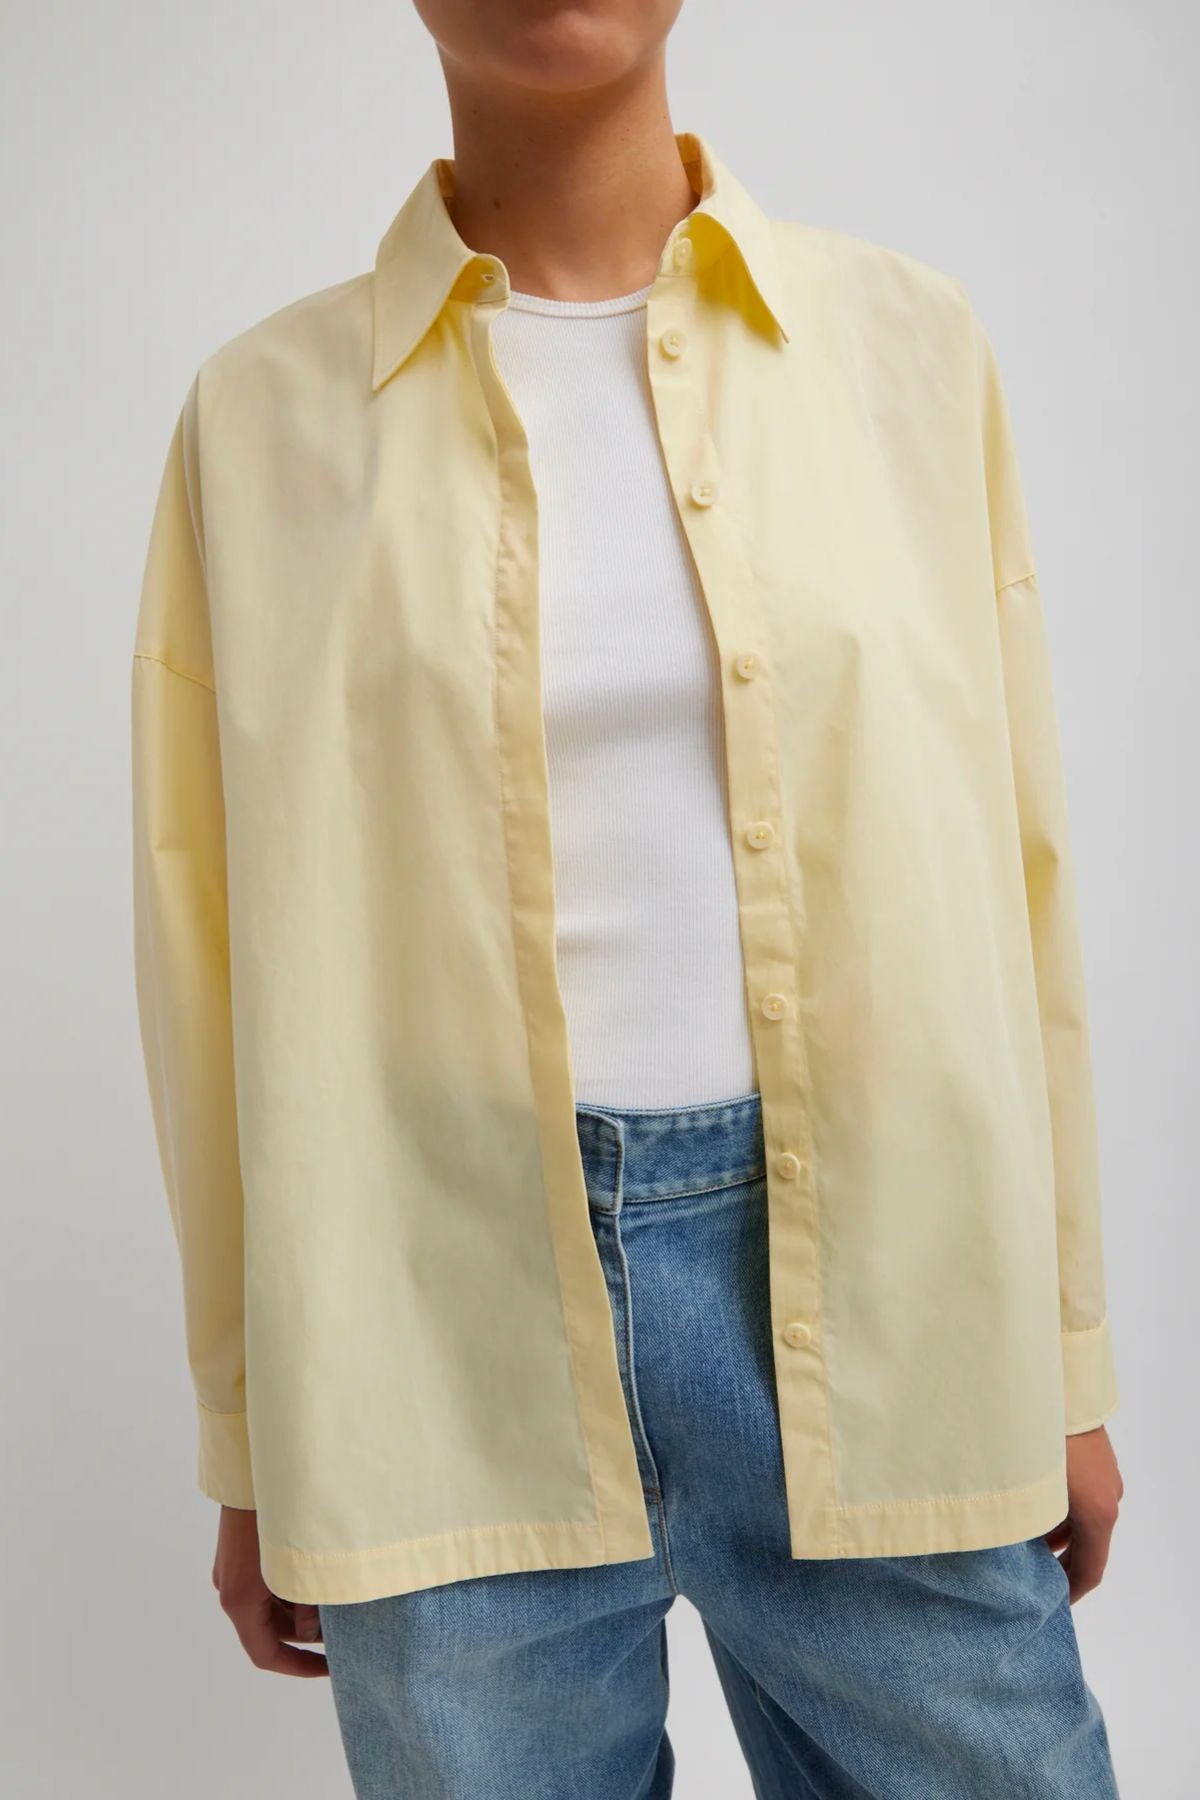 Tibi Gabe Oversized Shirt - Lemon Ice